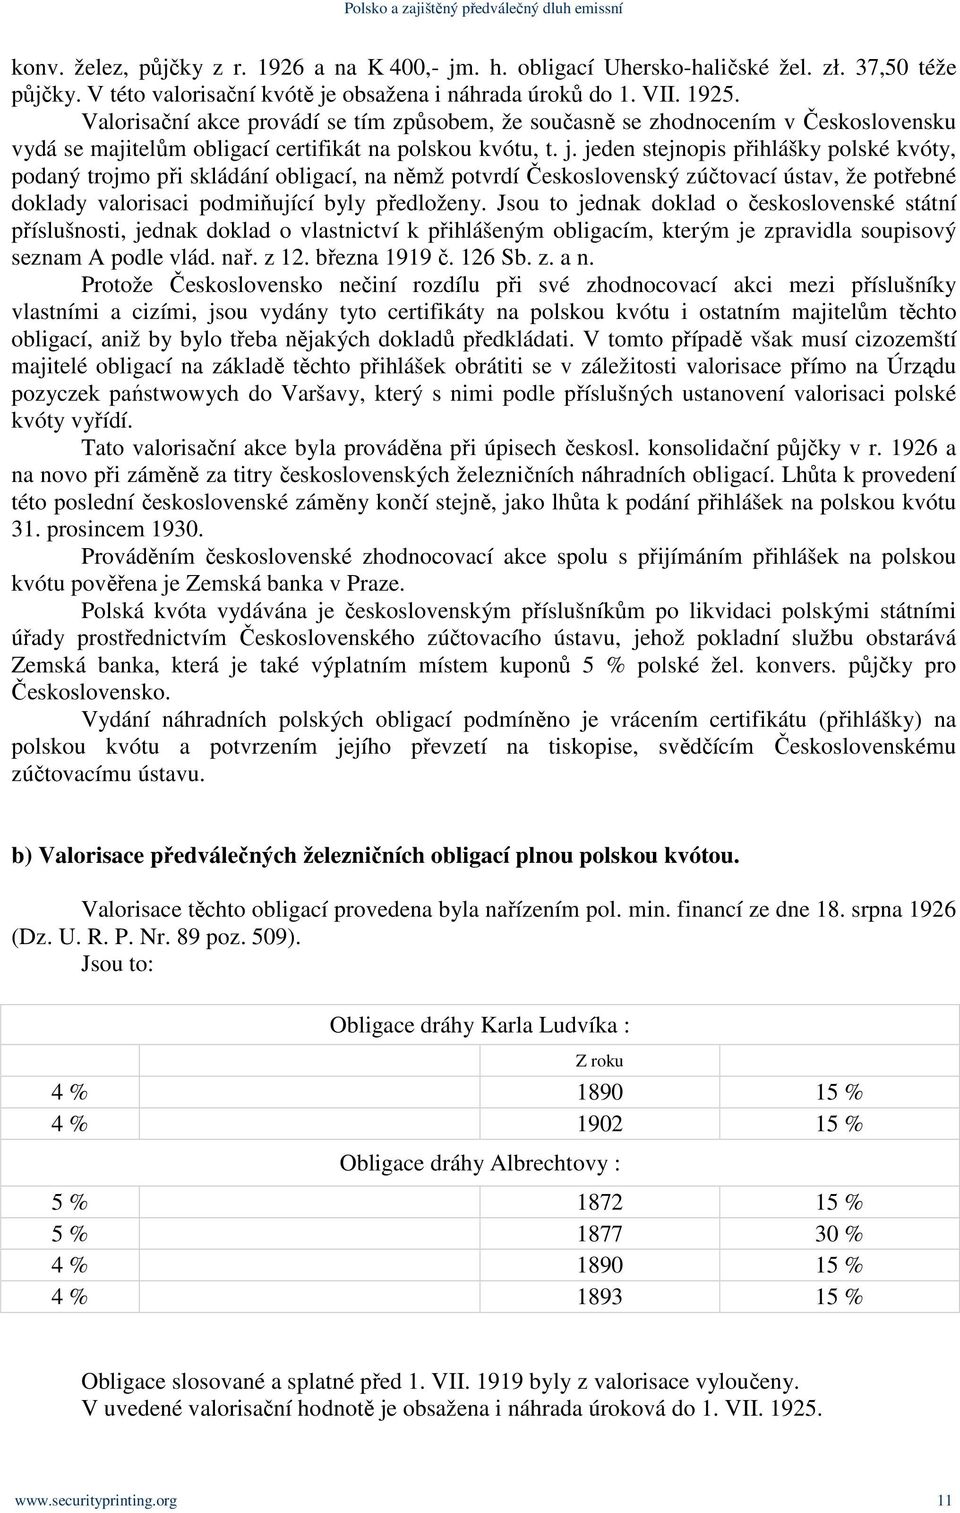 jeden stejnopis přihlášky polské kvóty, podaný trojmo při skládání obligací, na němž potvrdí Československý zúčtovací ústav, že potřebné doklady valorisaci podmiňující byly předloženy.